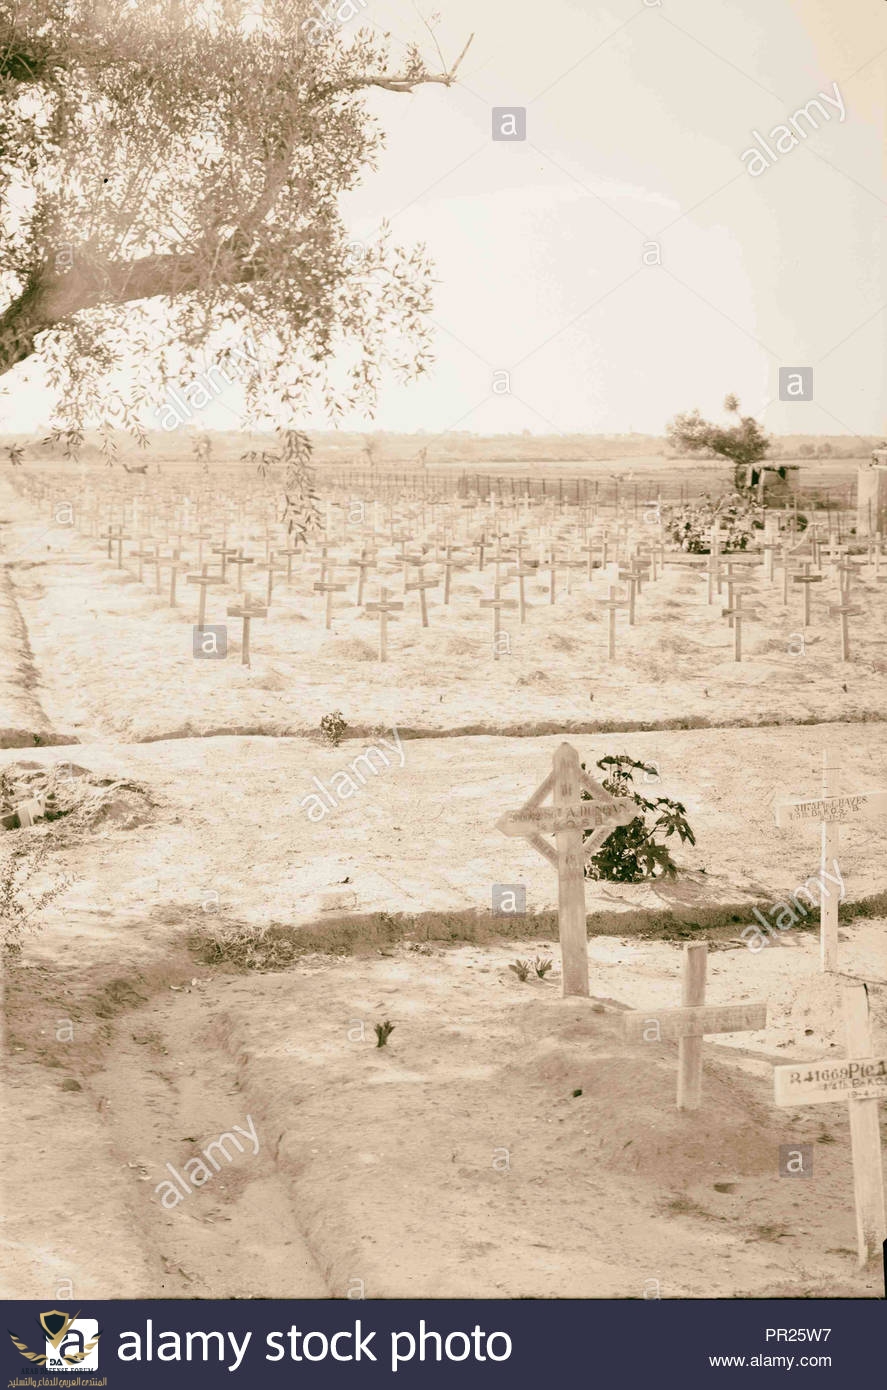 war-cemetery-at-gaza-1917-gaza-strip-middle-east-PR25W7.jpg